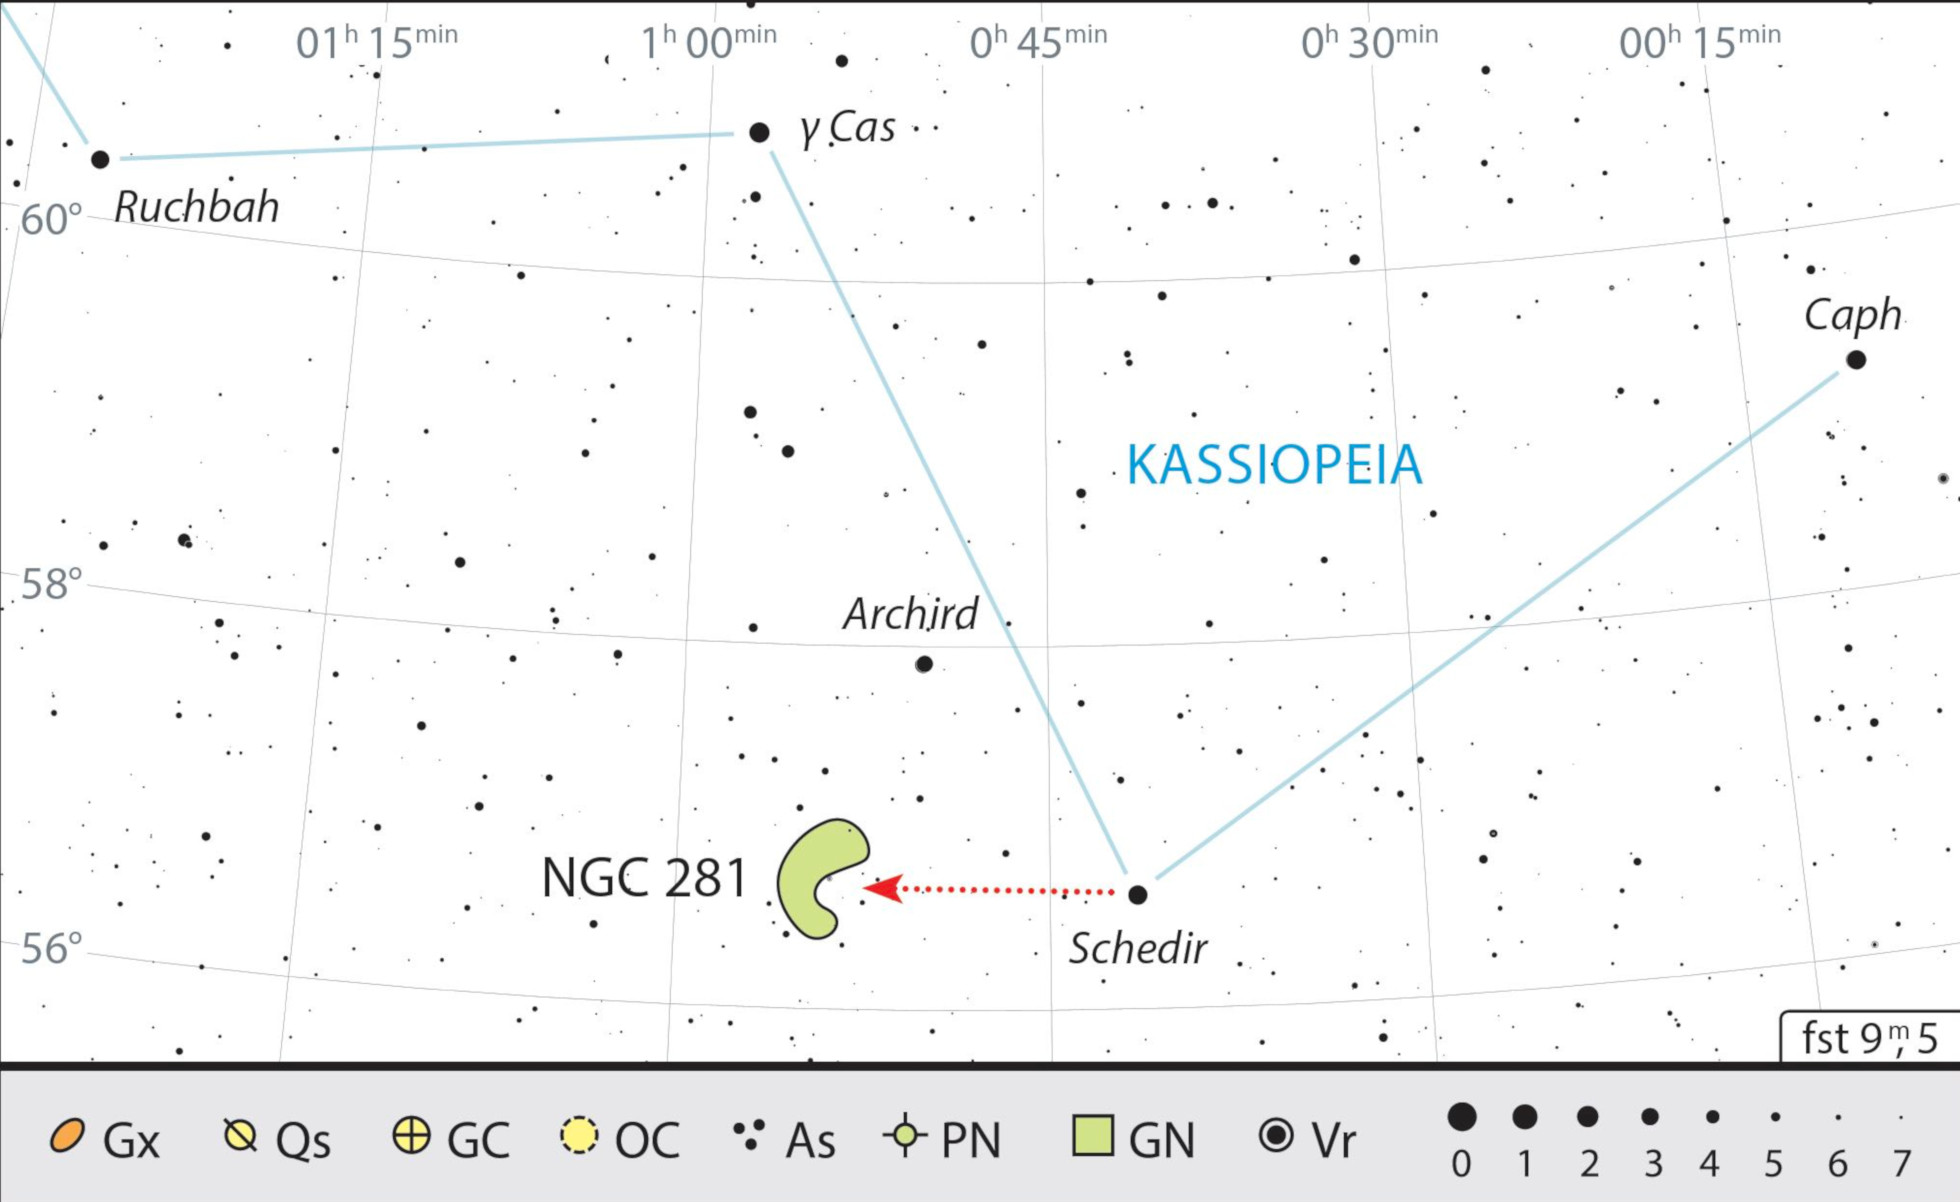 La nebulosa Pacman si trova nelle vicinanze di α Cas (Schedir), la stella principale di Cassiopea. J. Scholten